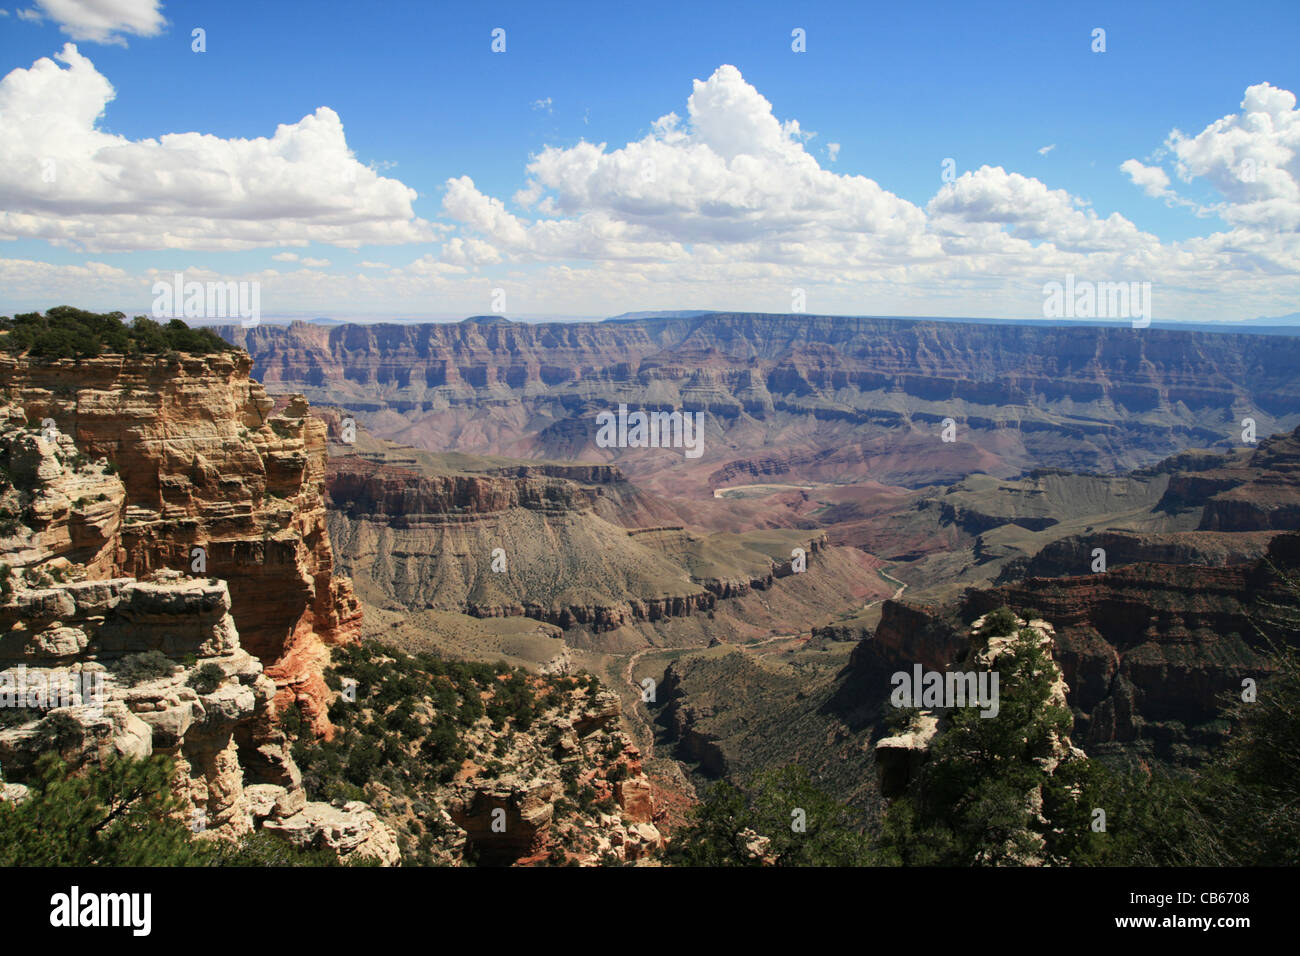 Ansicht des Grand Canyon National Park von der Walhalla Overlook am North Rim, Arizona Stockfoto